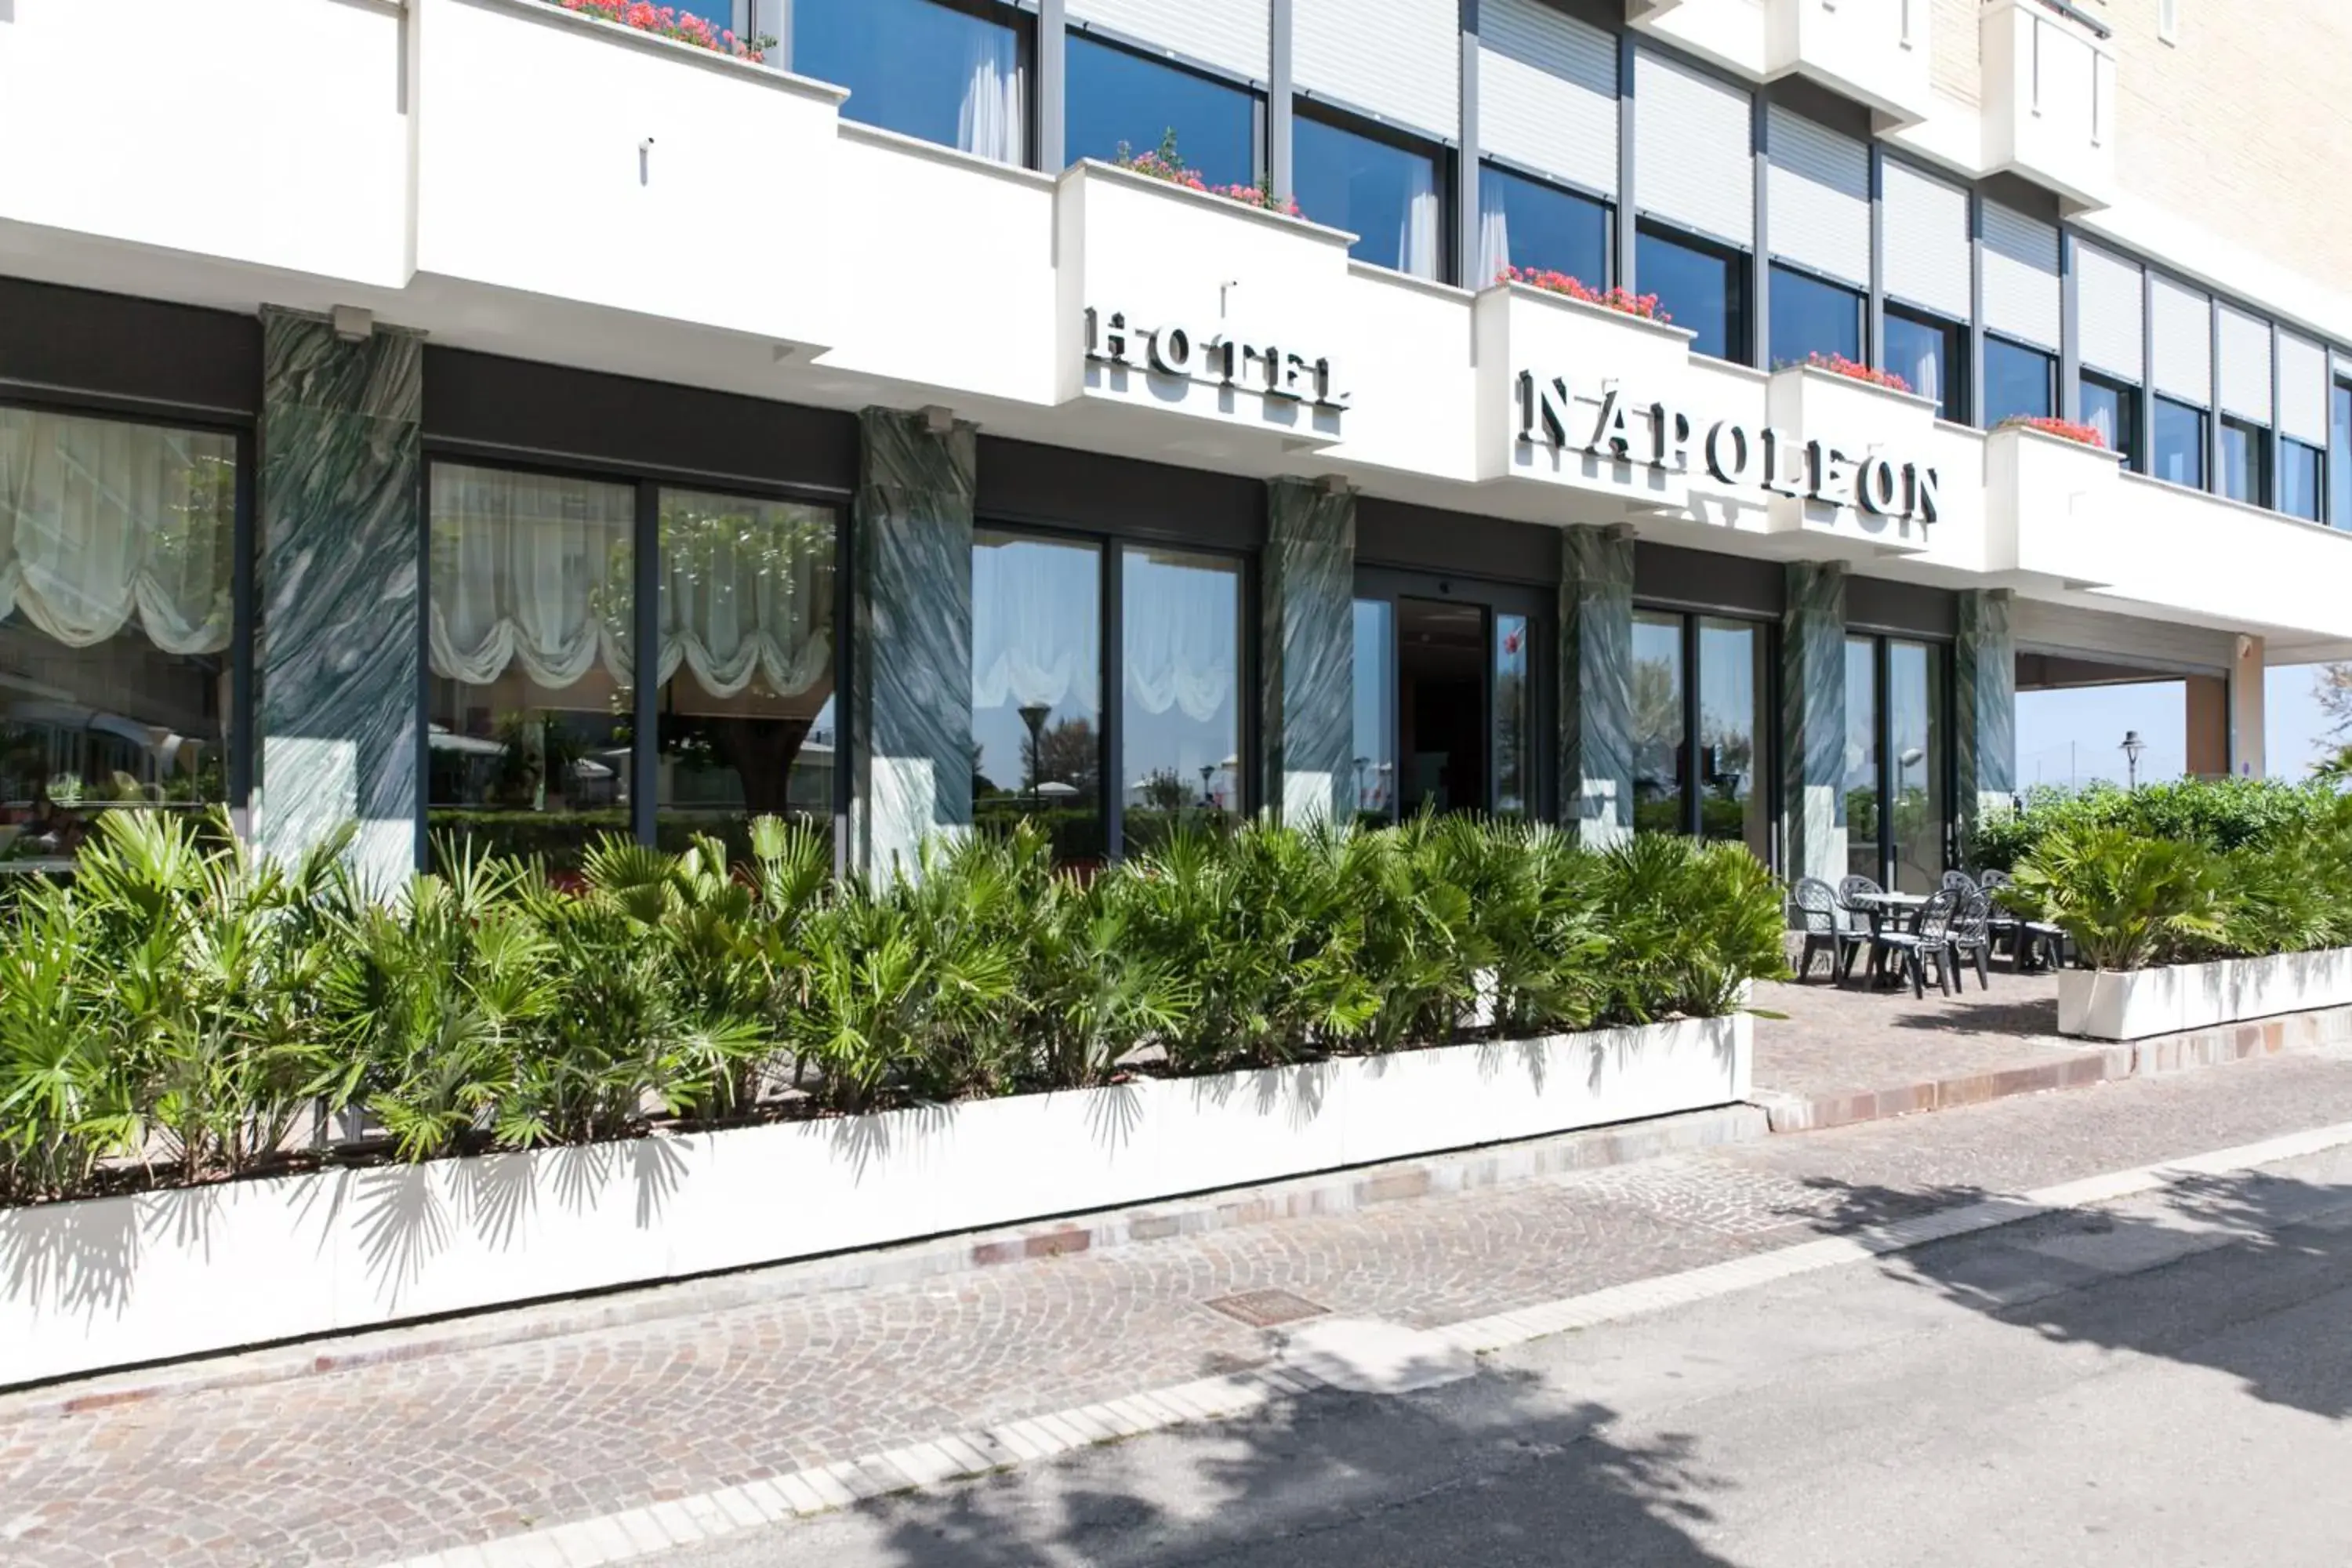 Facade/entrance, Property Building in Hotel Napoleon